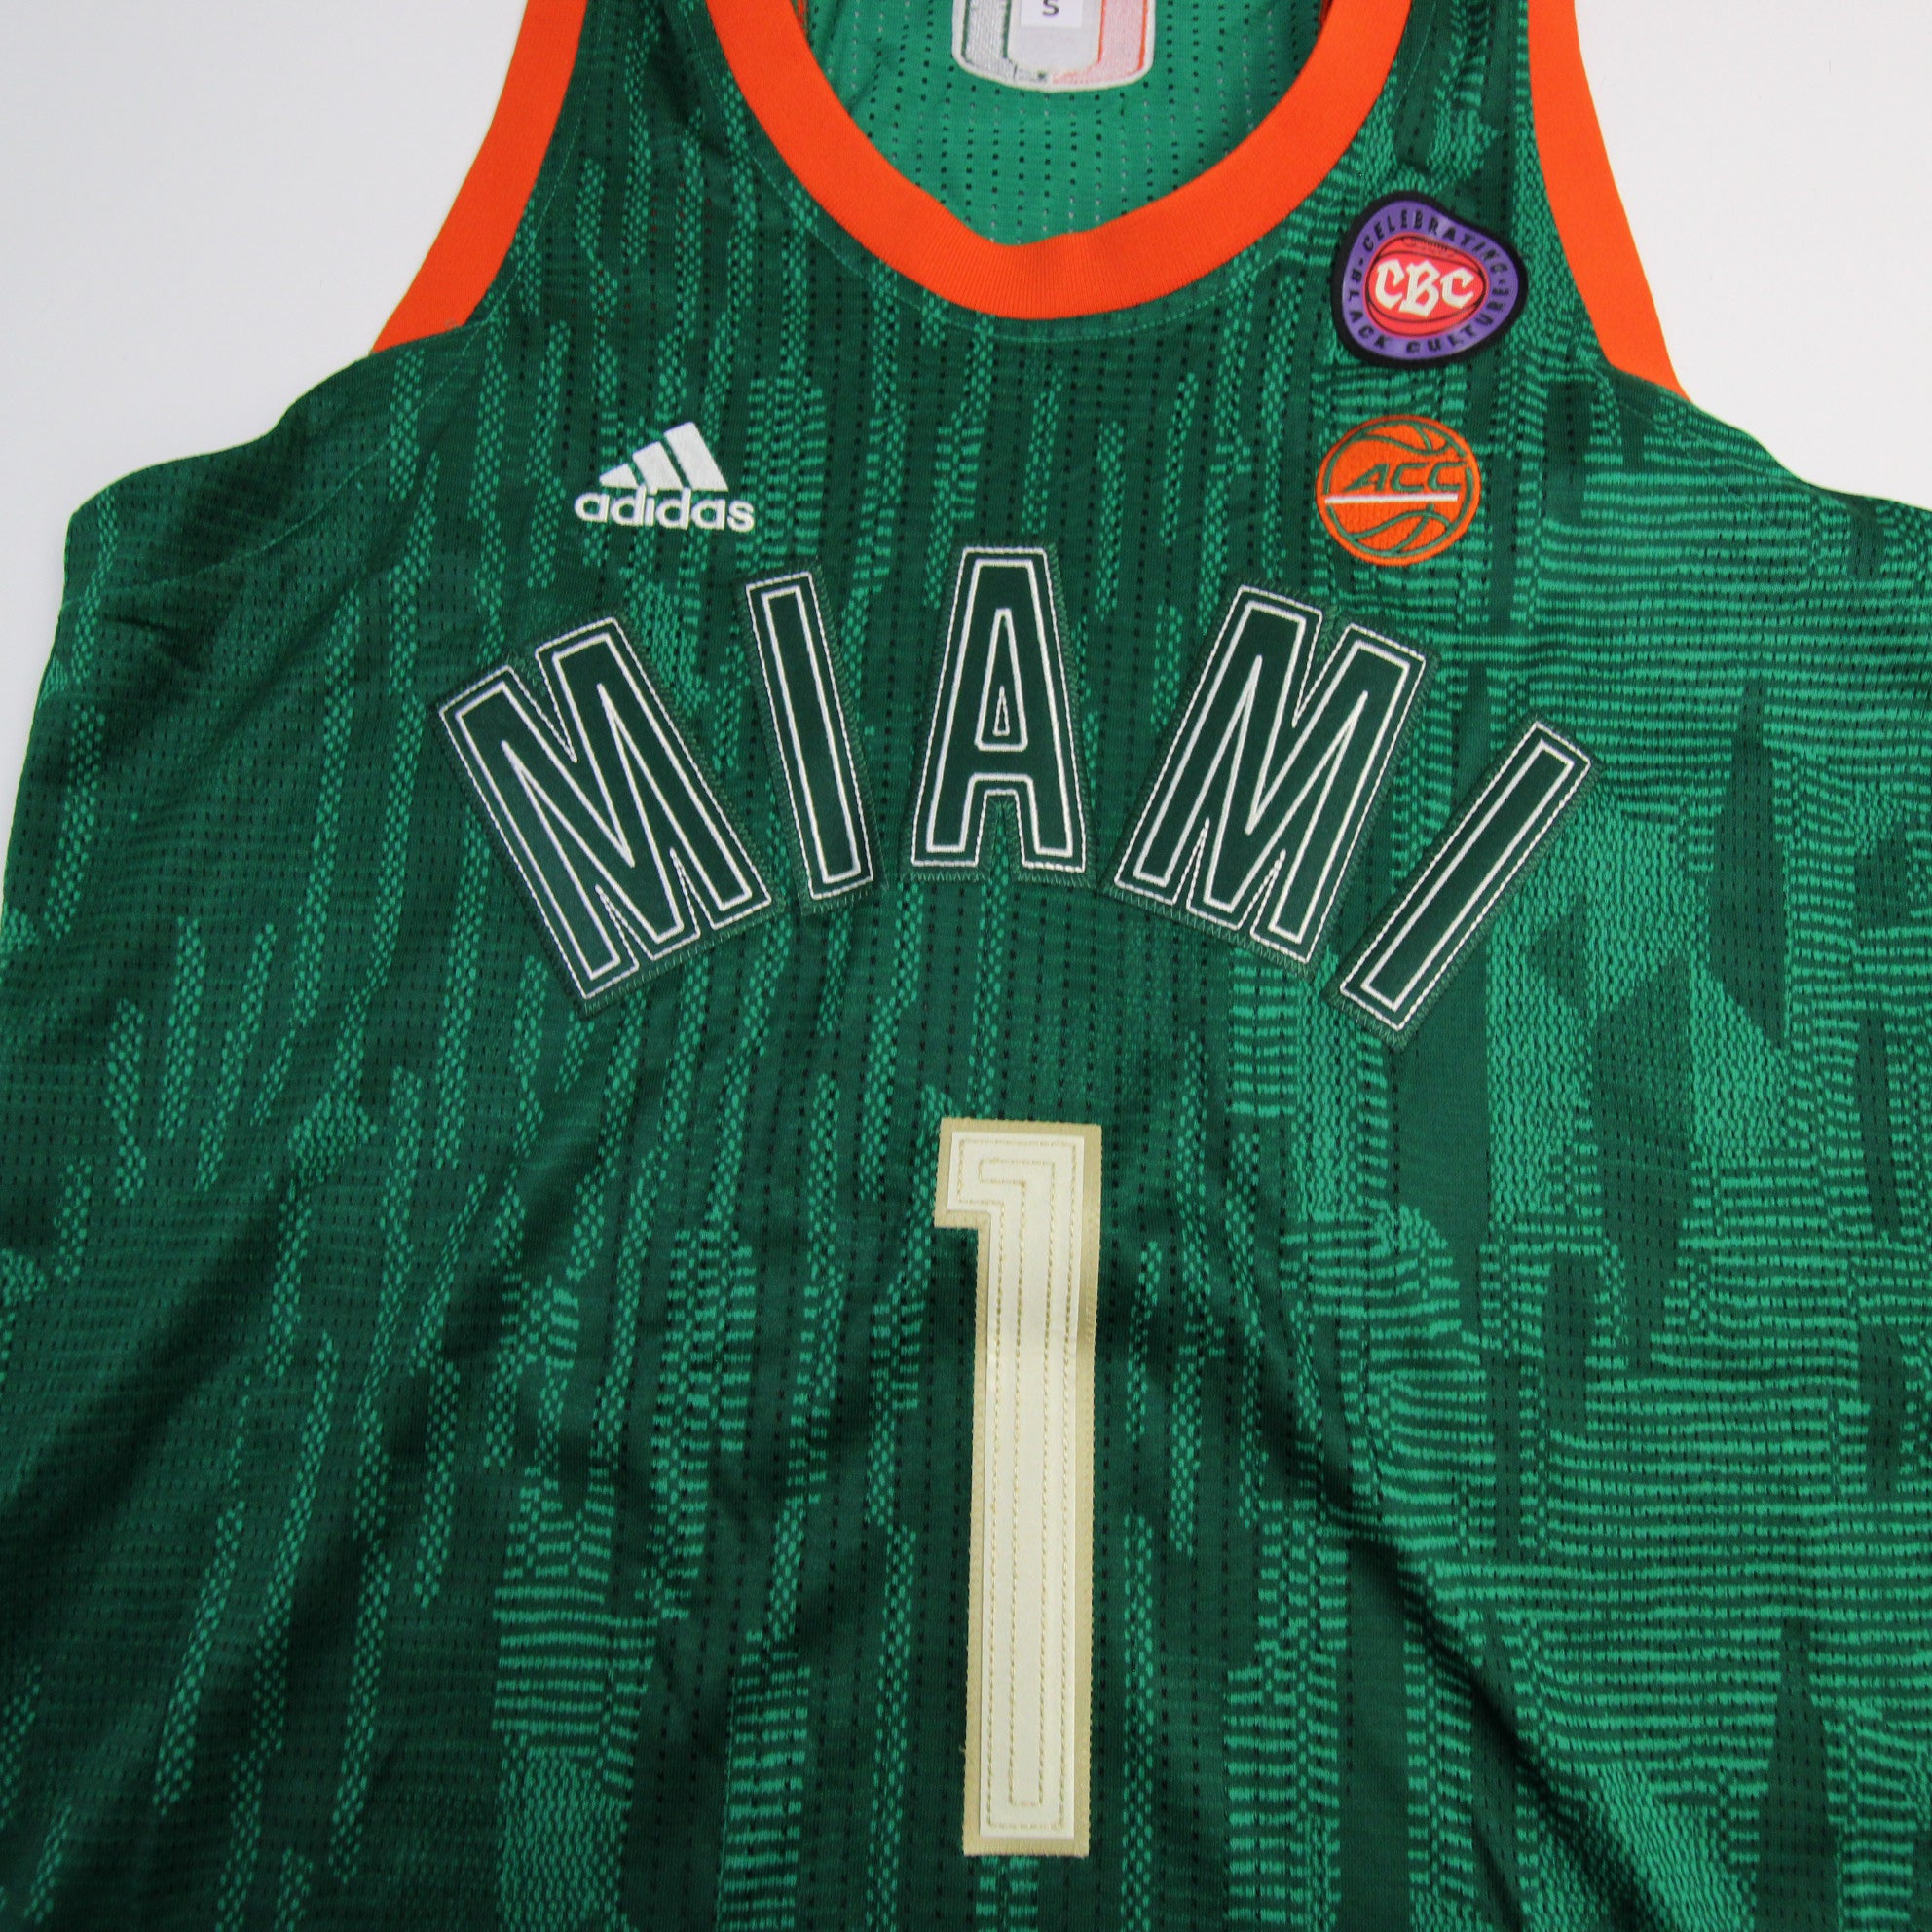 New adidas Miami Hurricanes basketball uniforms 'a delight